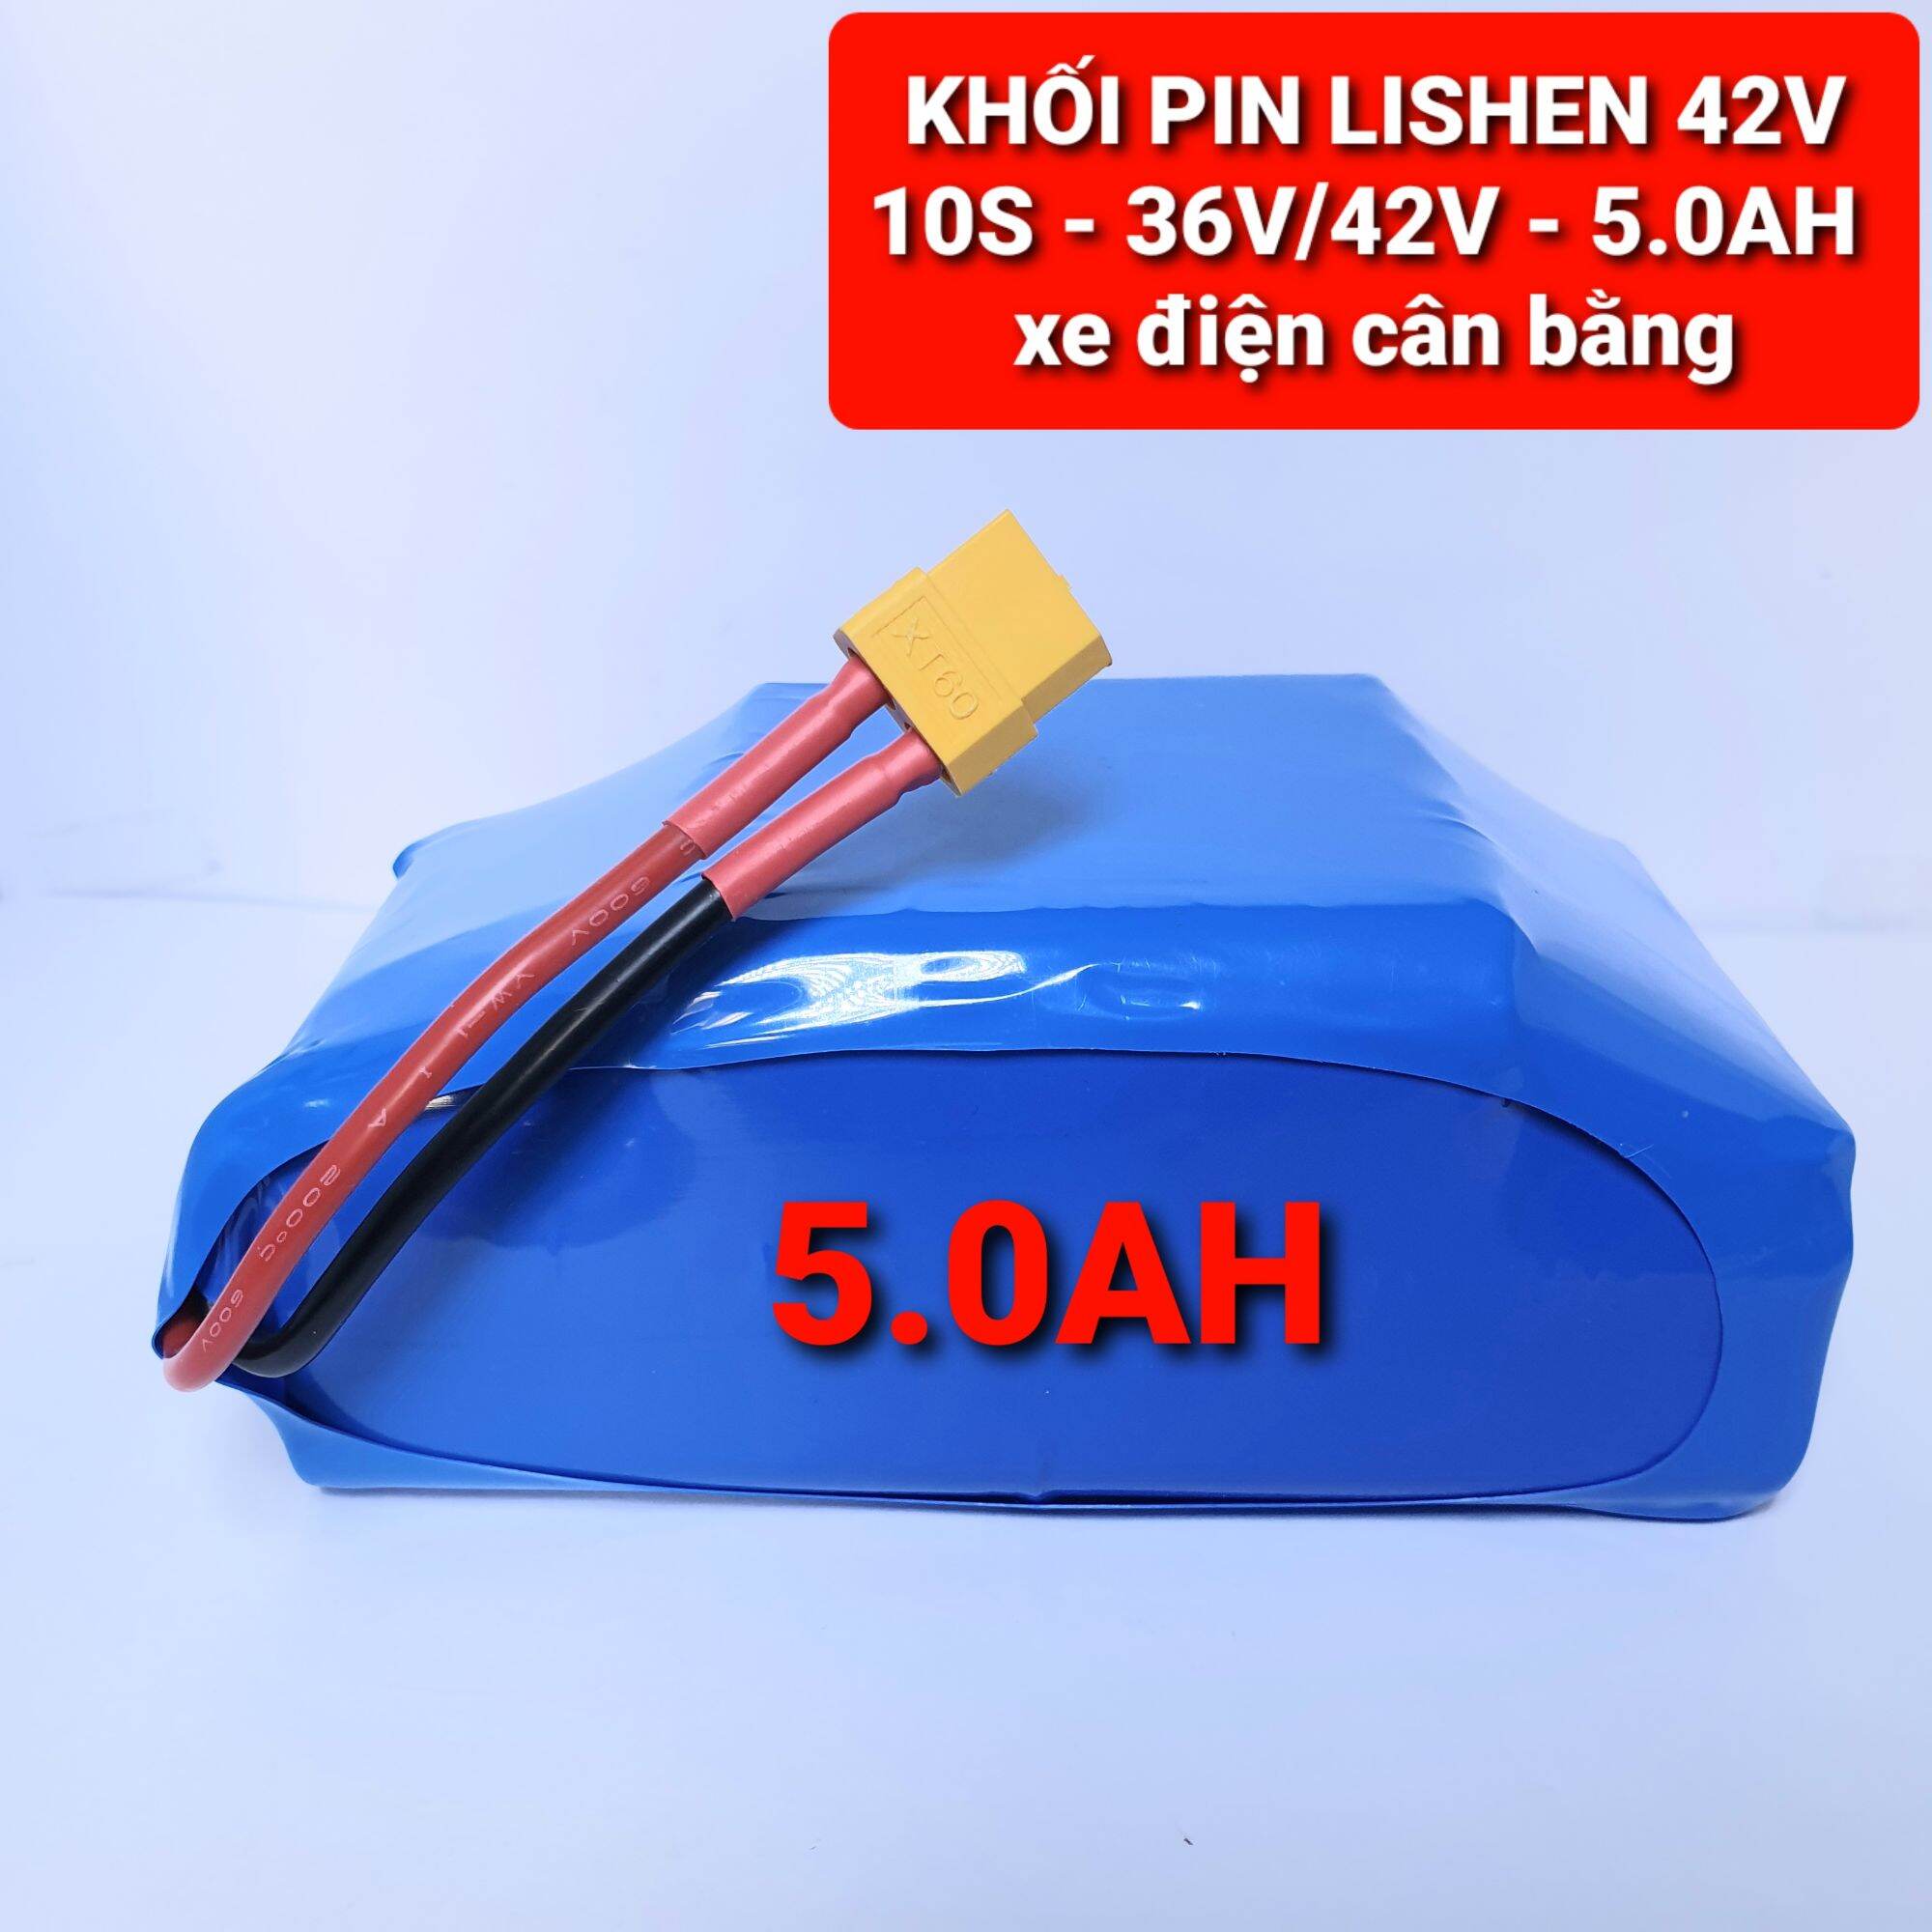 Achun.vn - KHỐI PIN LISHEN - 10S - 5.0Ah - 36V/42V xe điện cân bằng